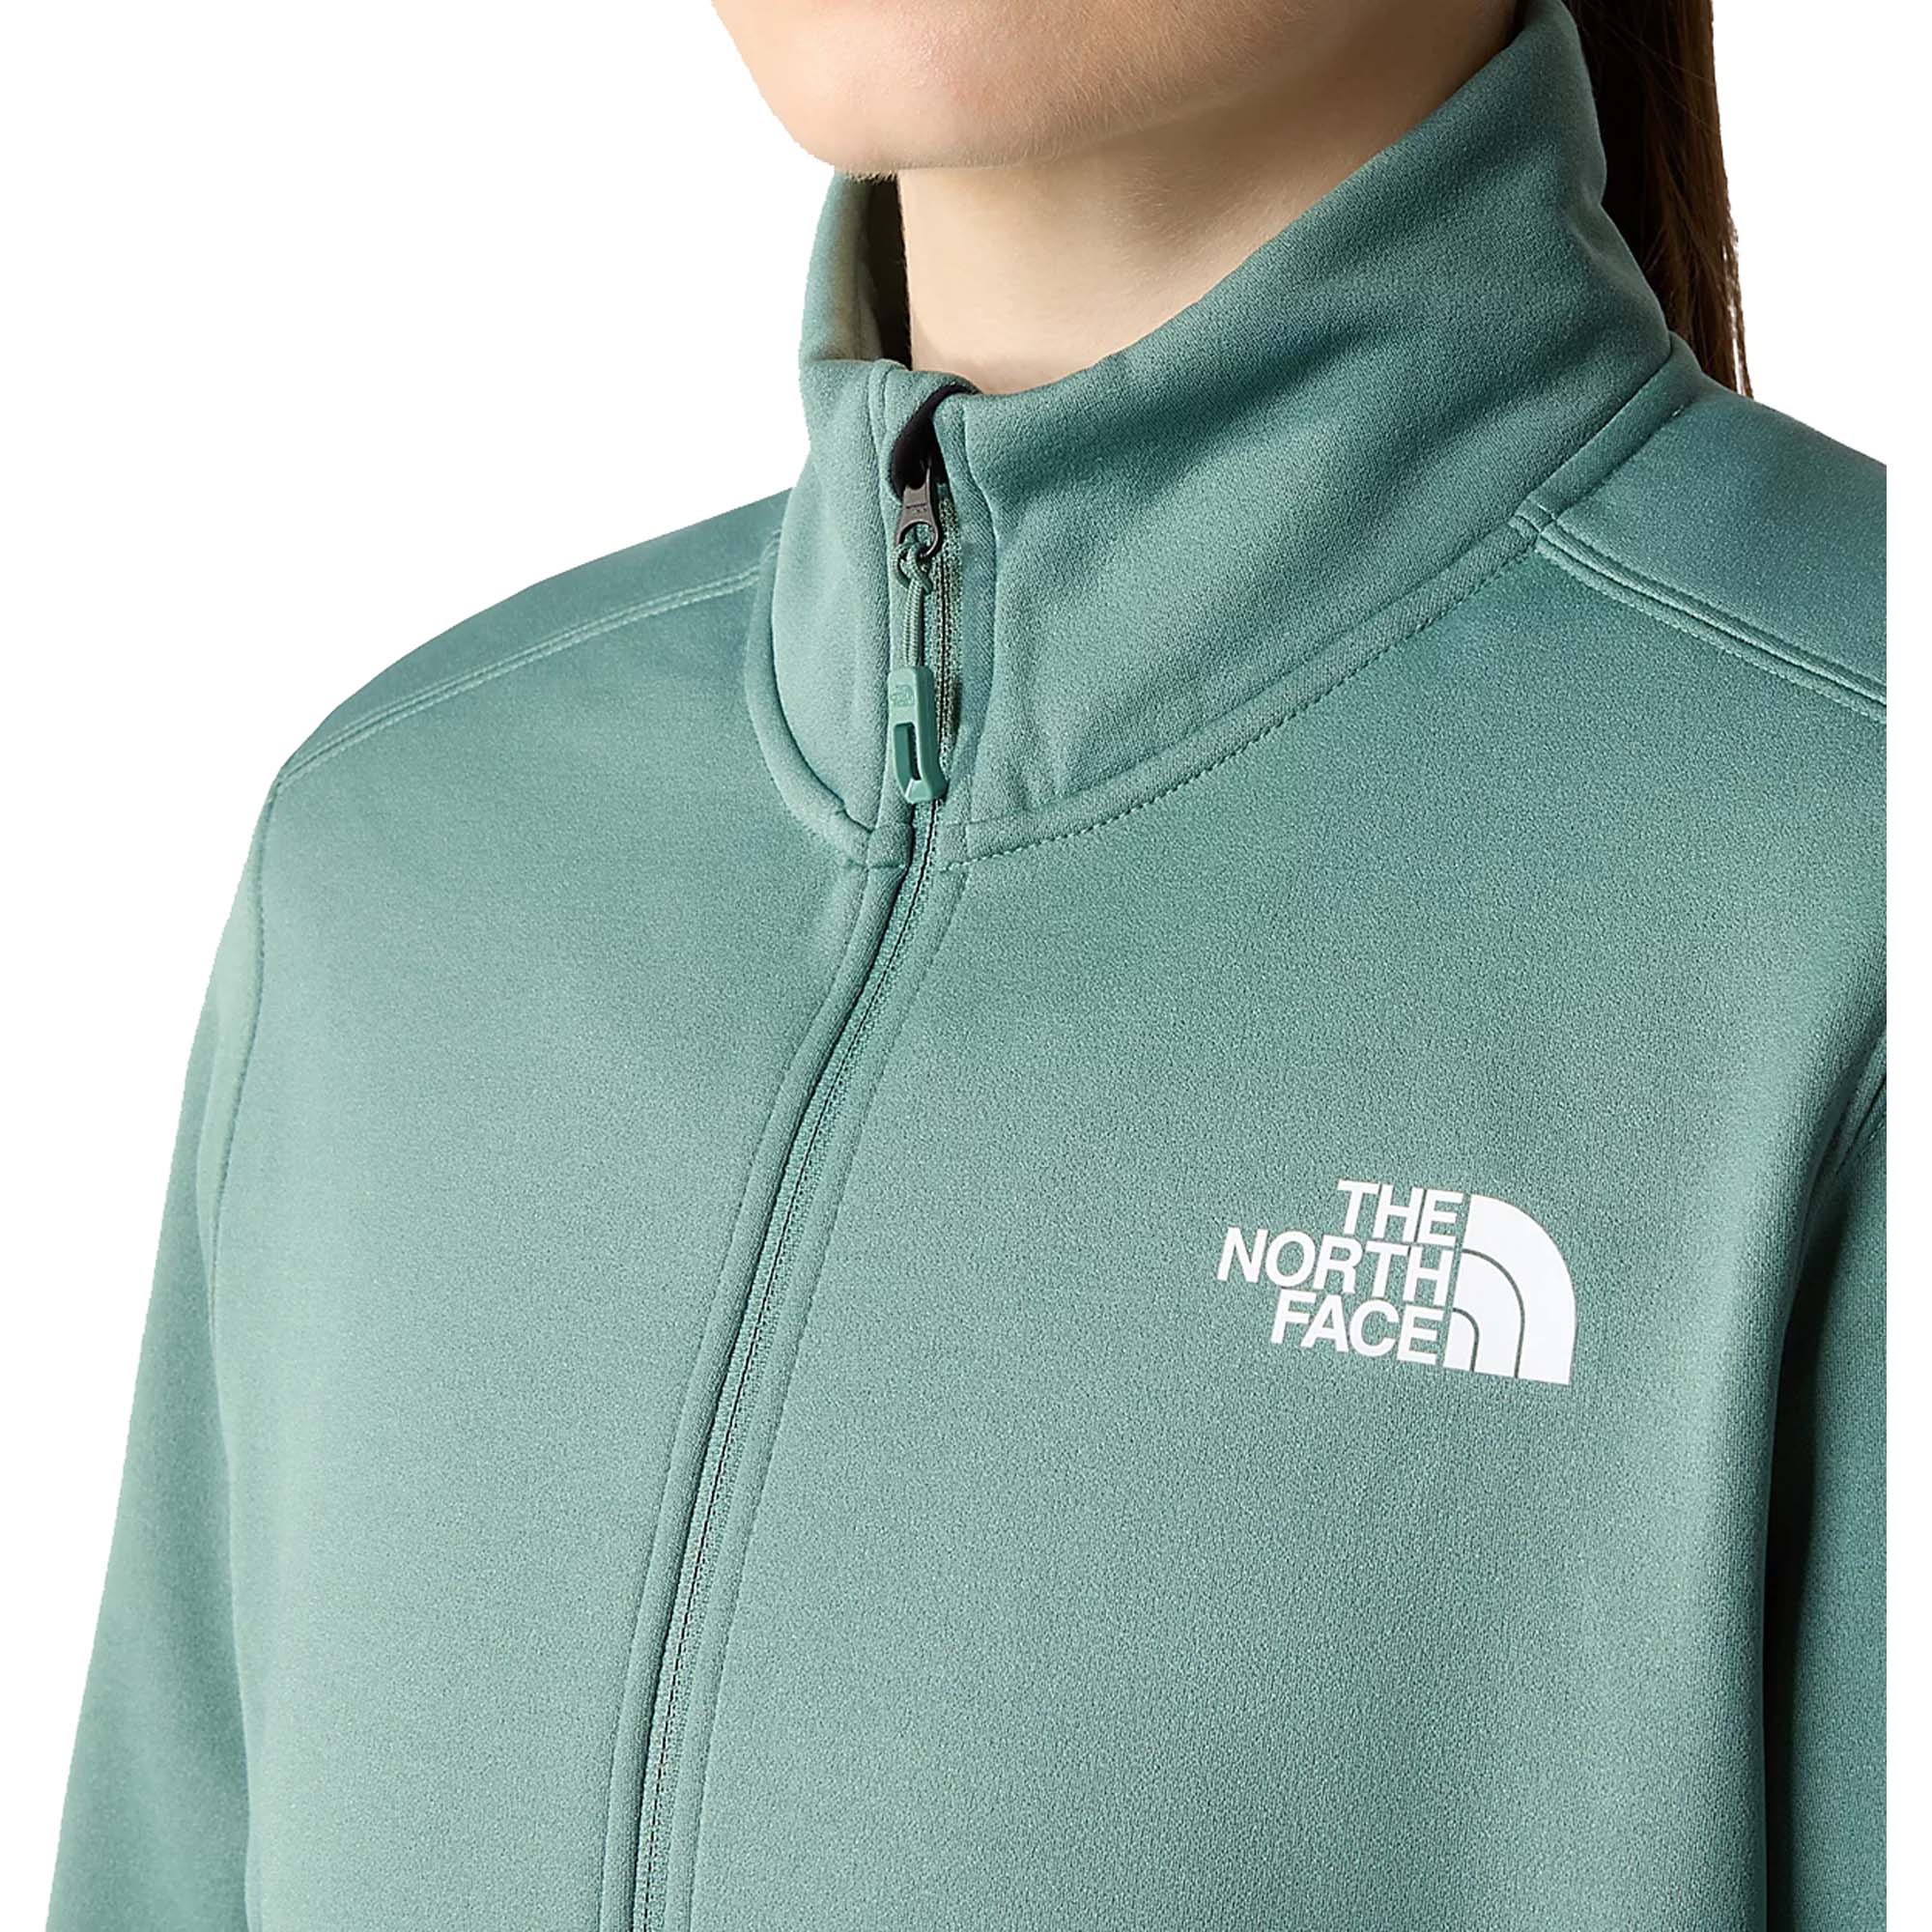 The North Face Mistyescape  Women's Fleece Jacket